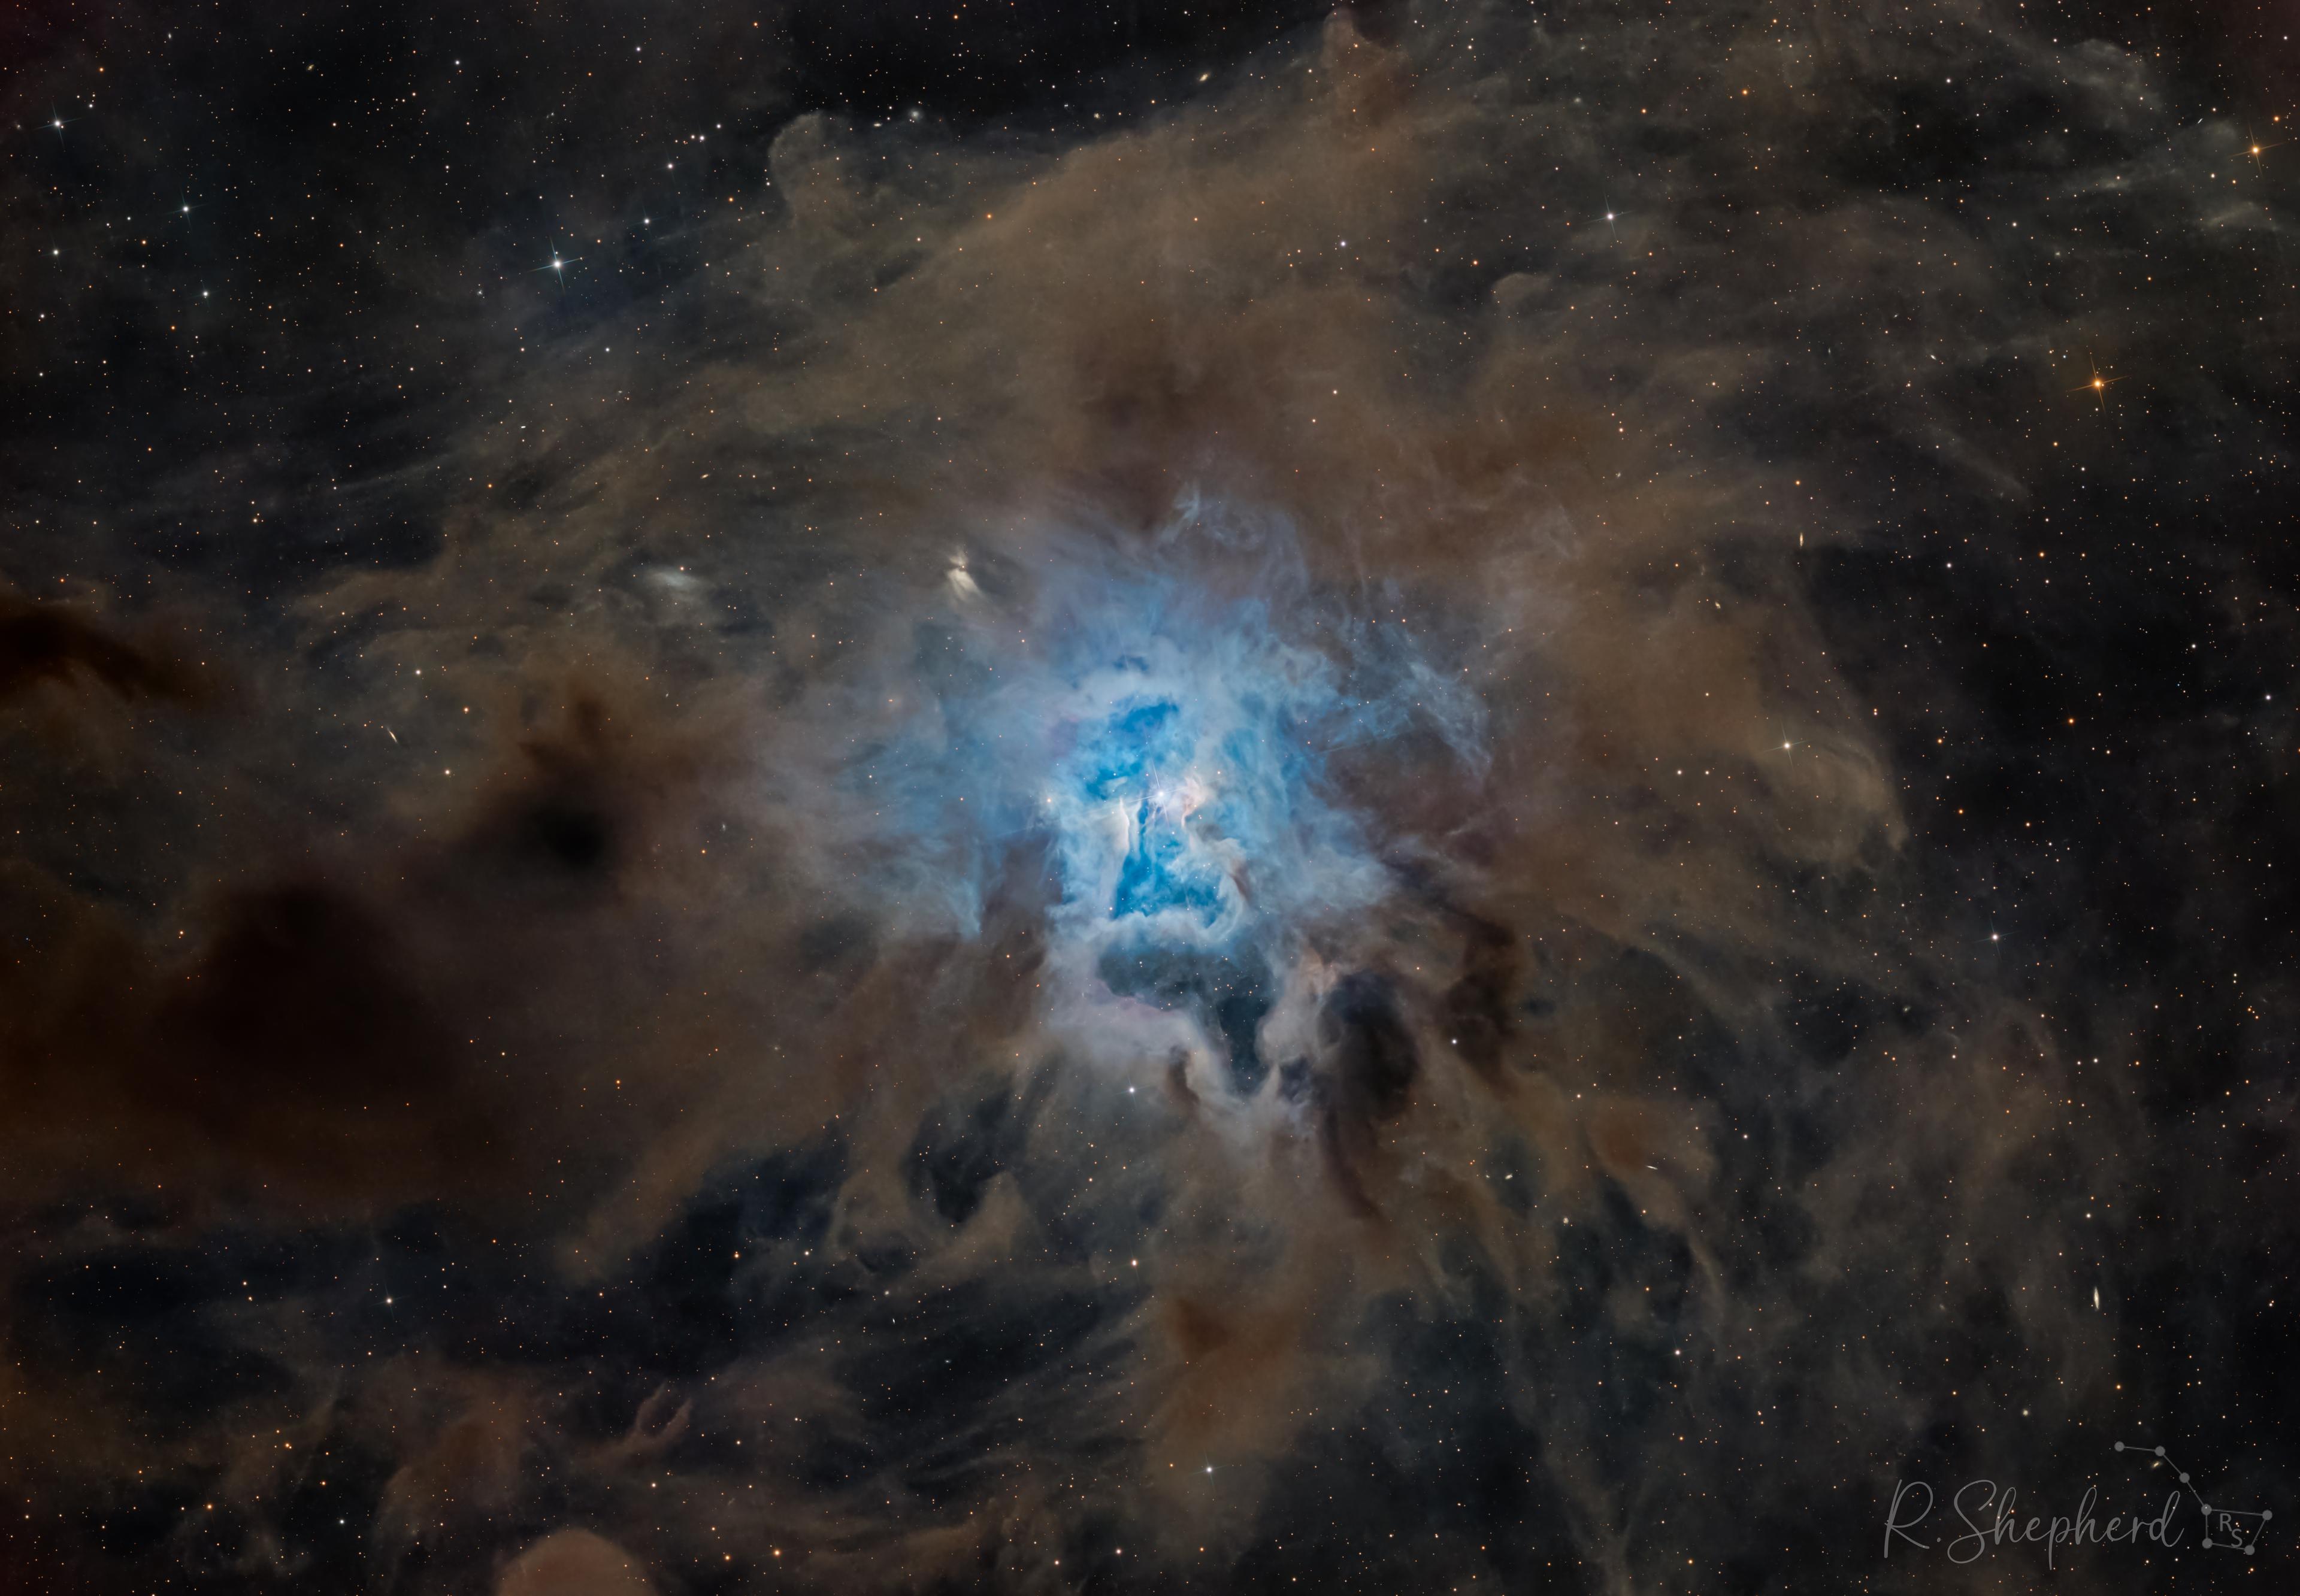 سديمٌ بامتدادات مغبرّة تبرز في وسطه منطقة ساطعة بيضاء مزرقّة وتحيط بها أغبرة عاتِمة. تظهر نجوم متفاوتة عبر الصورة.